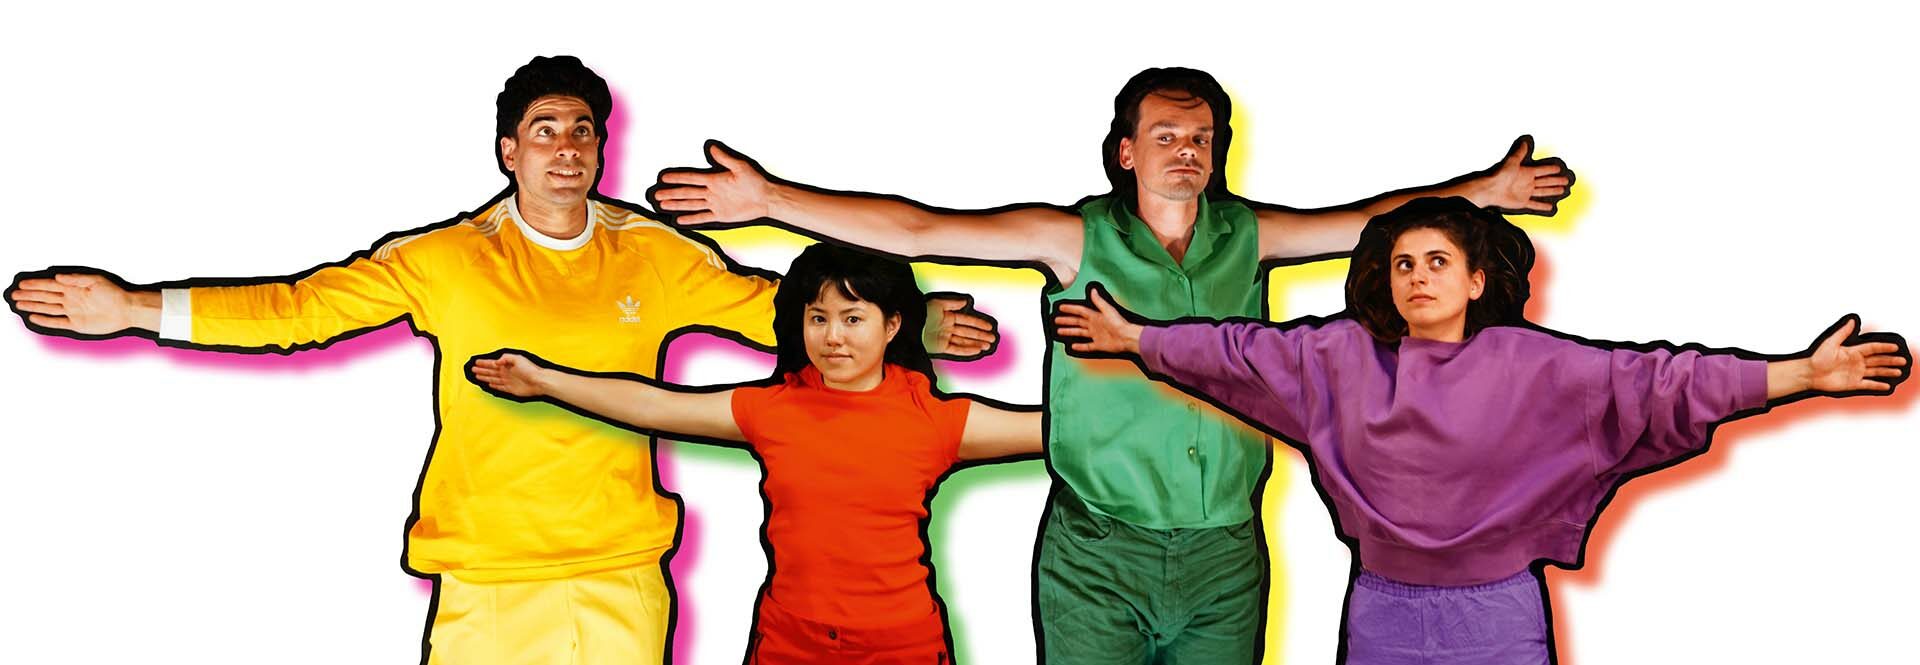 Vier dansers met gekleurde joggingspakken staan met hun armen wijd op de foto